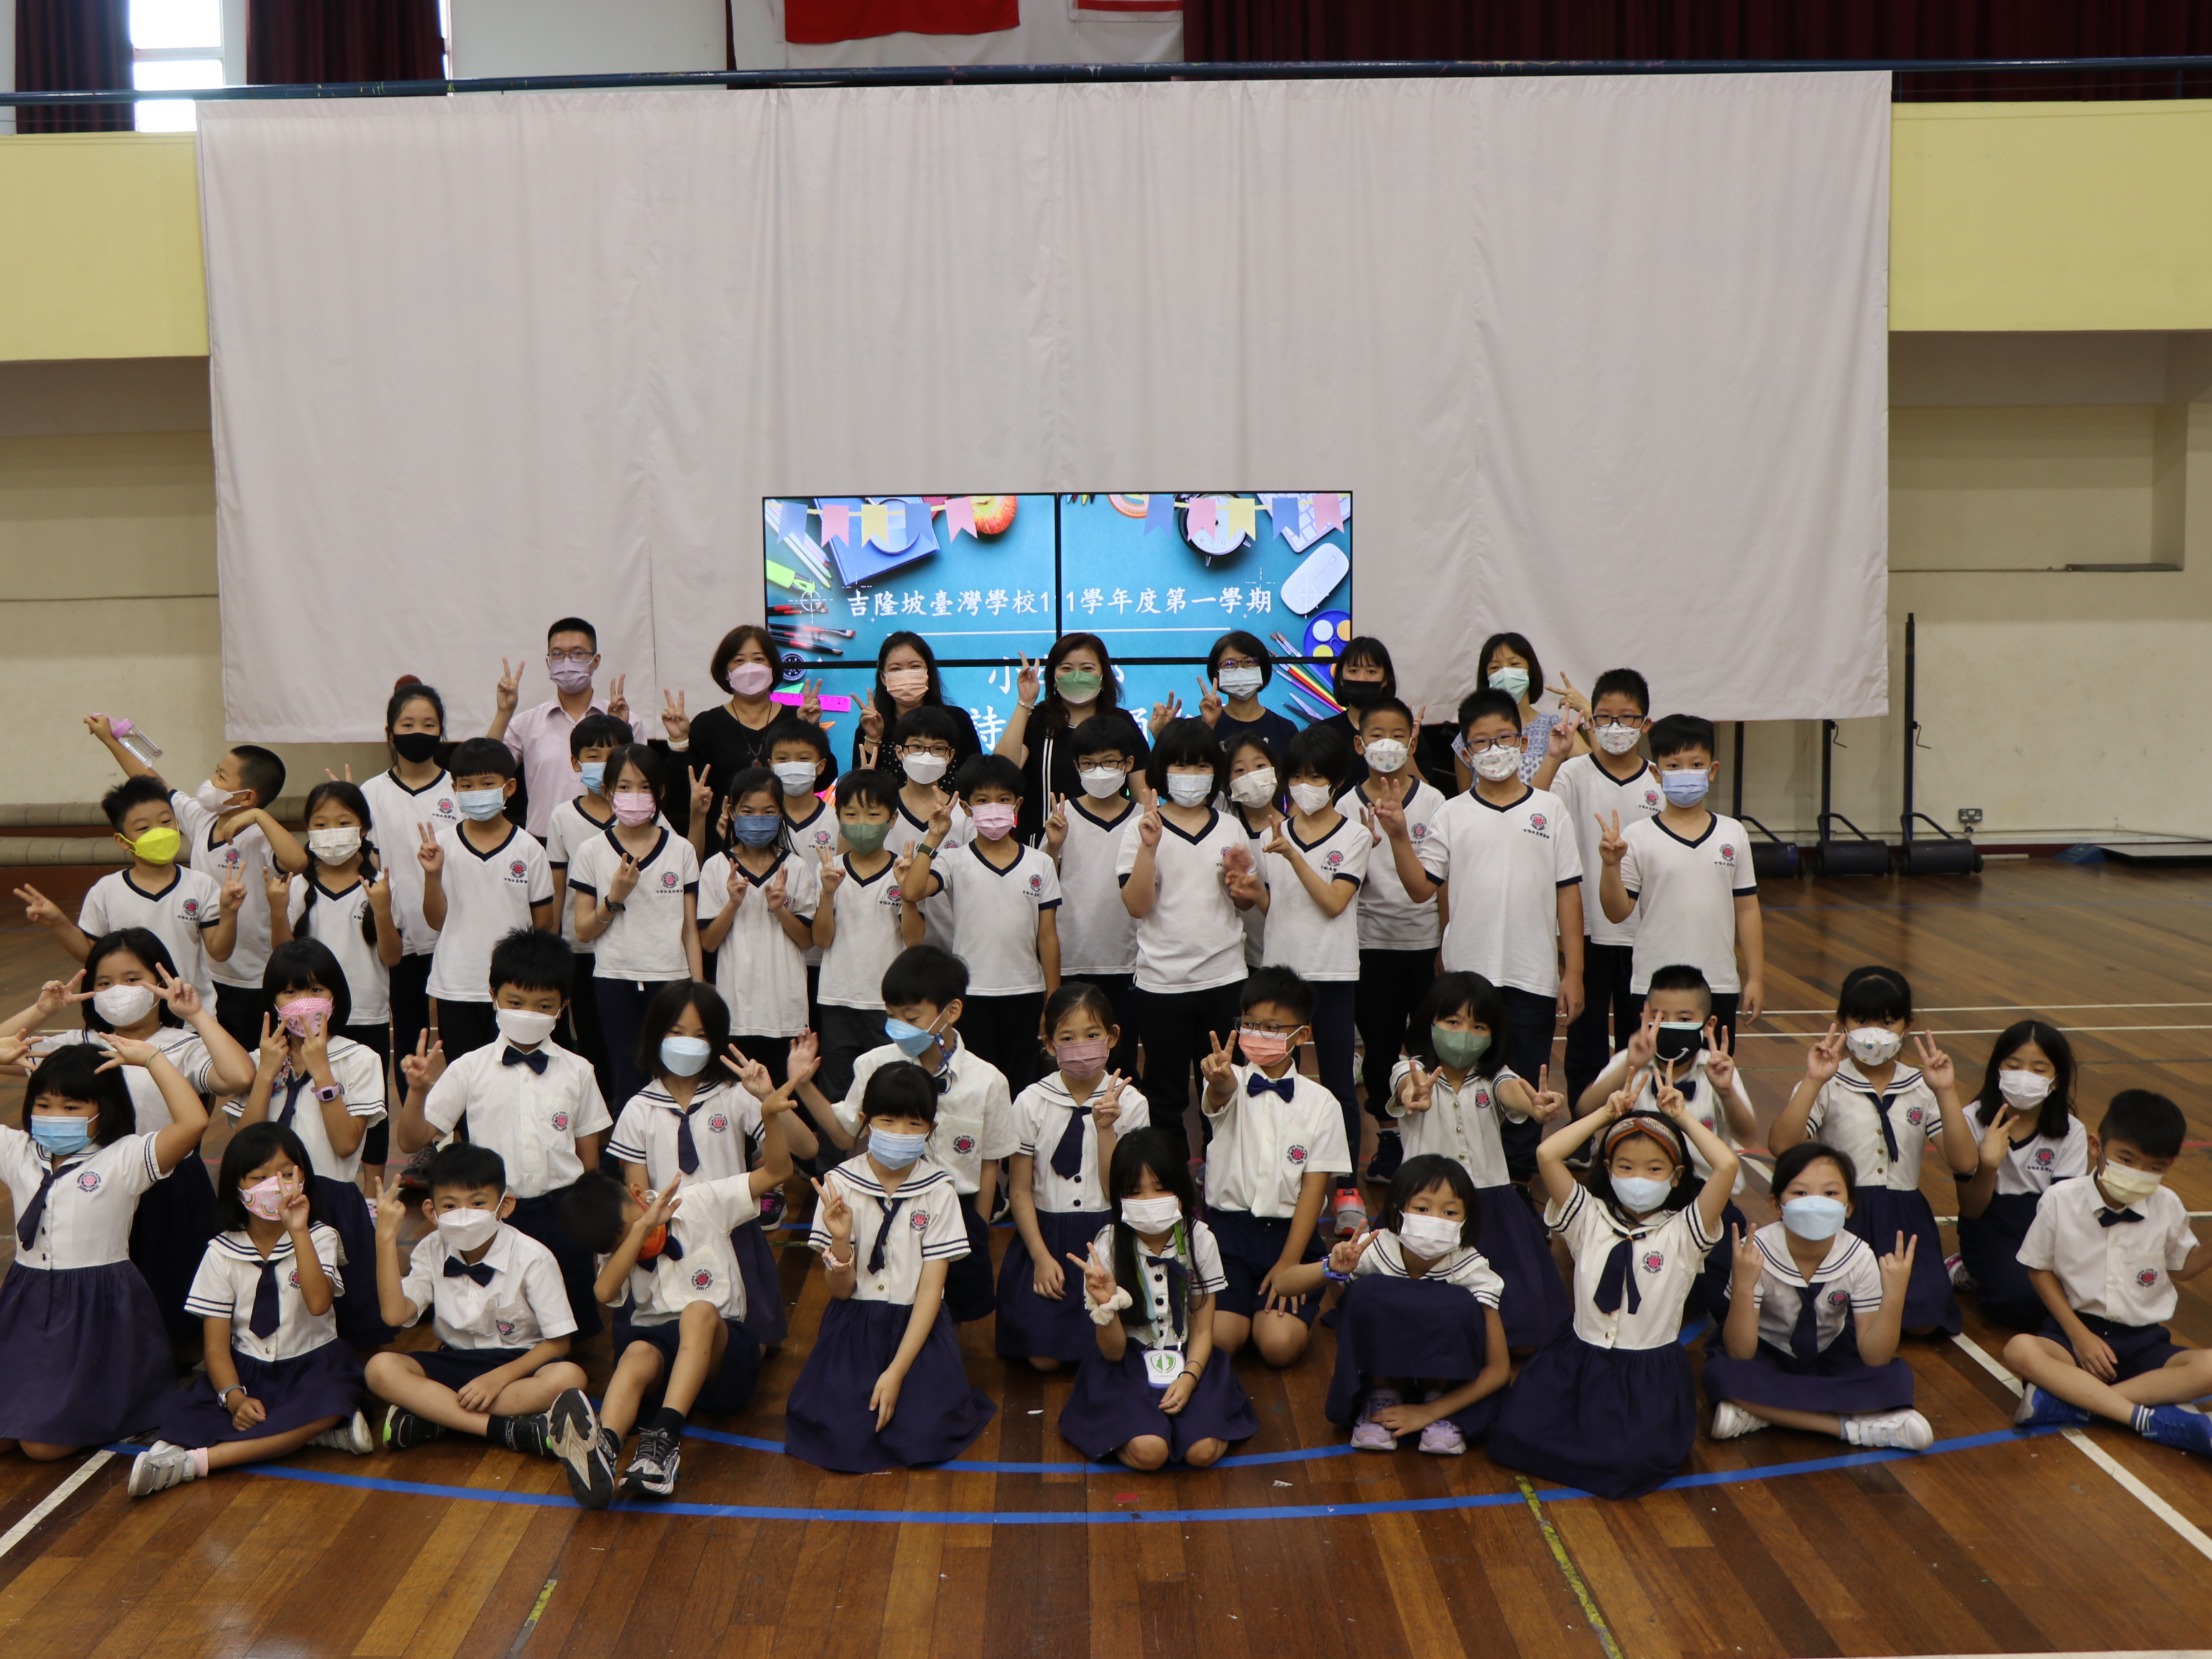 吉隆坡臺灣學校111學年度小學部團體詩歌朗誦比賽圖片